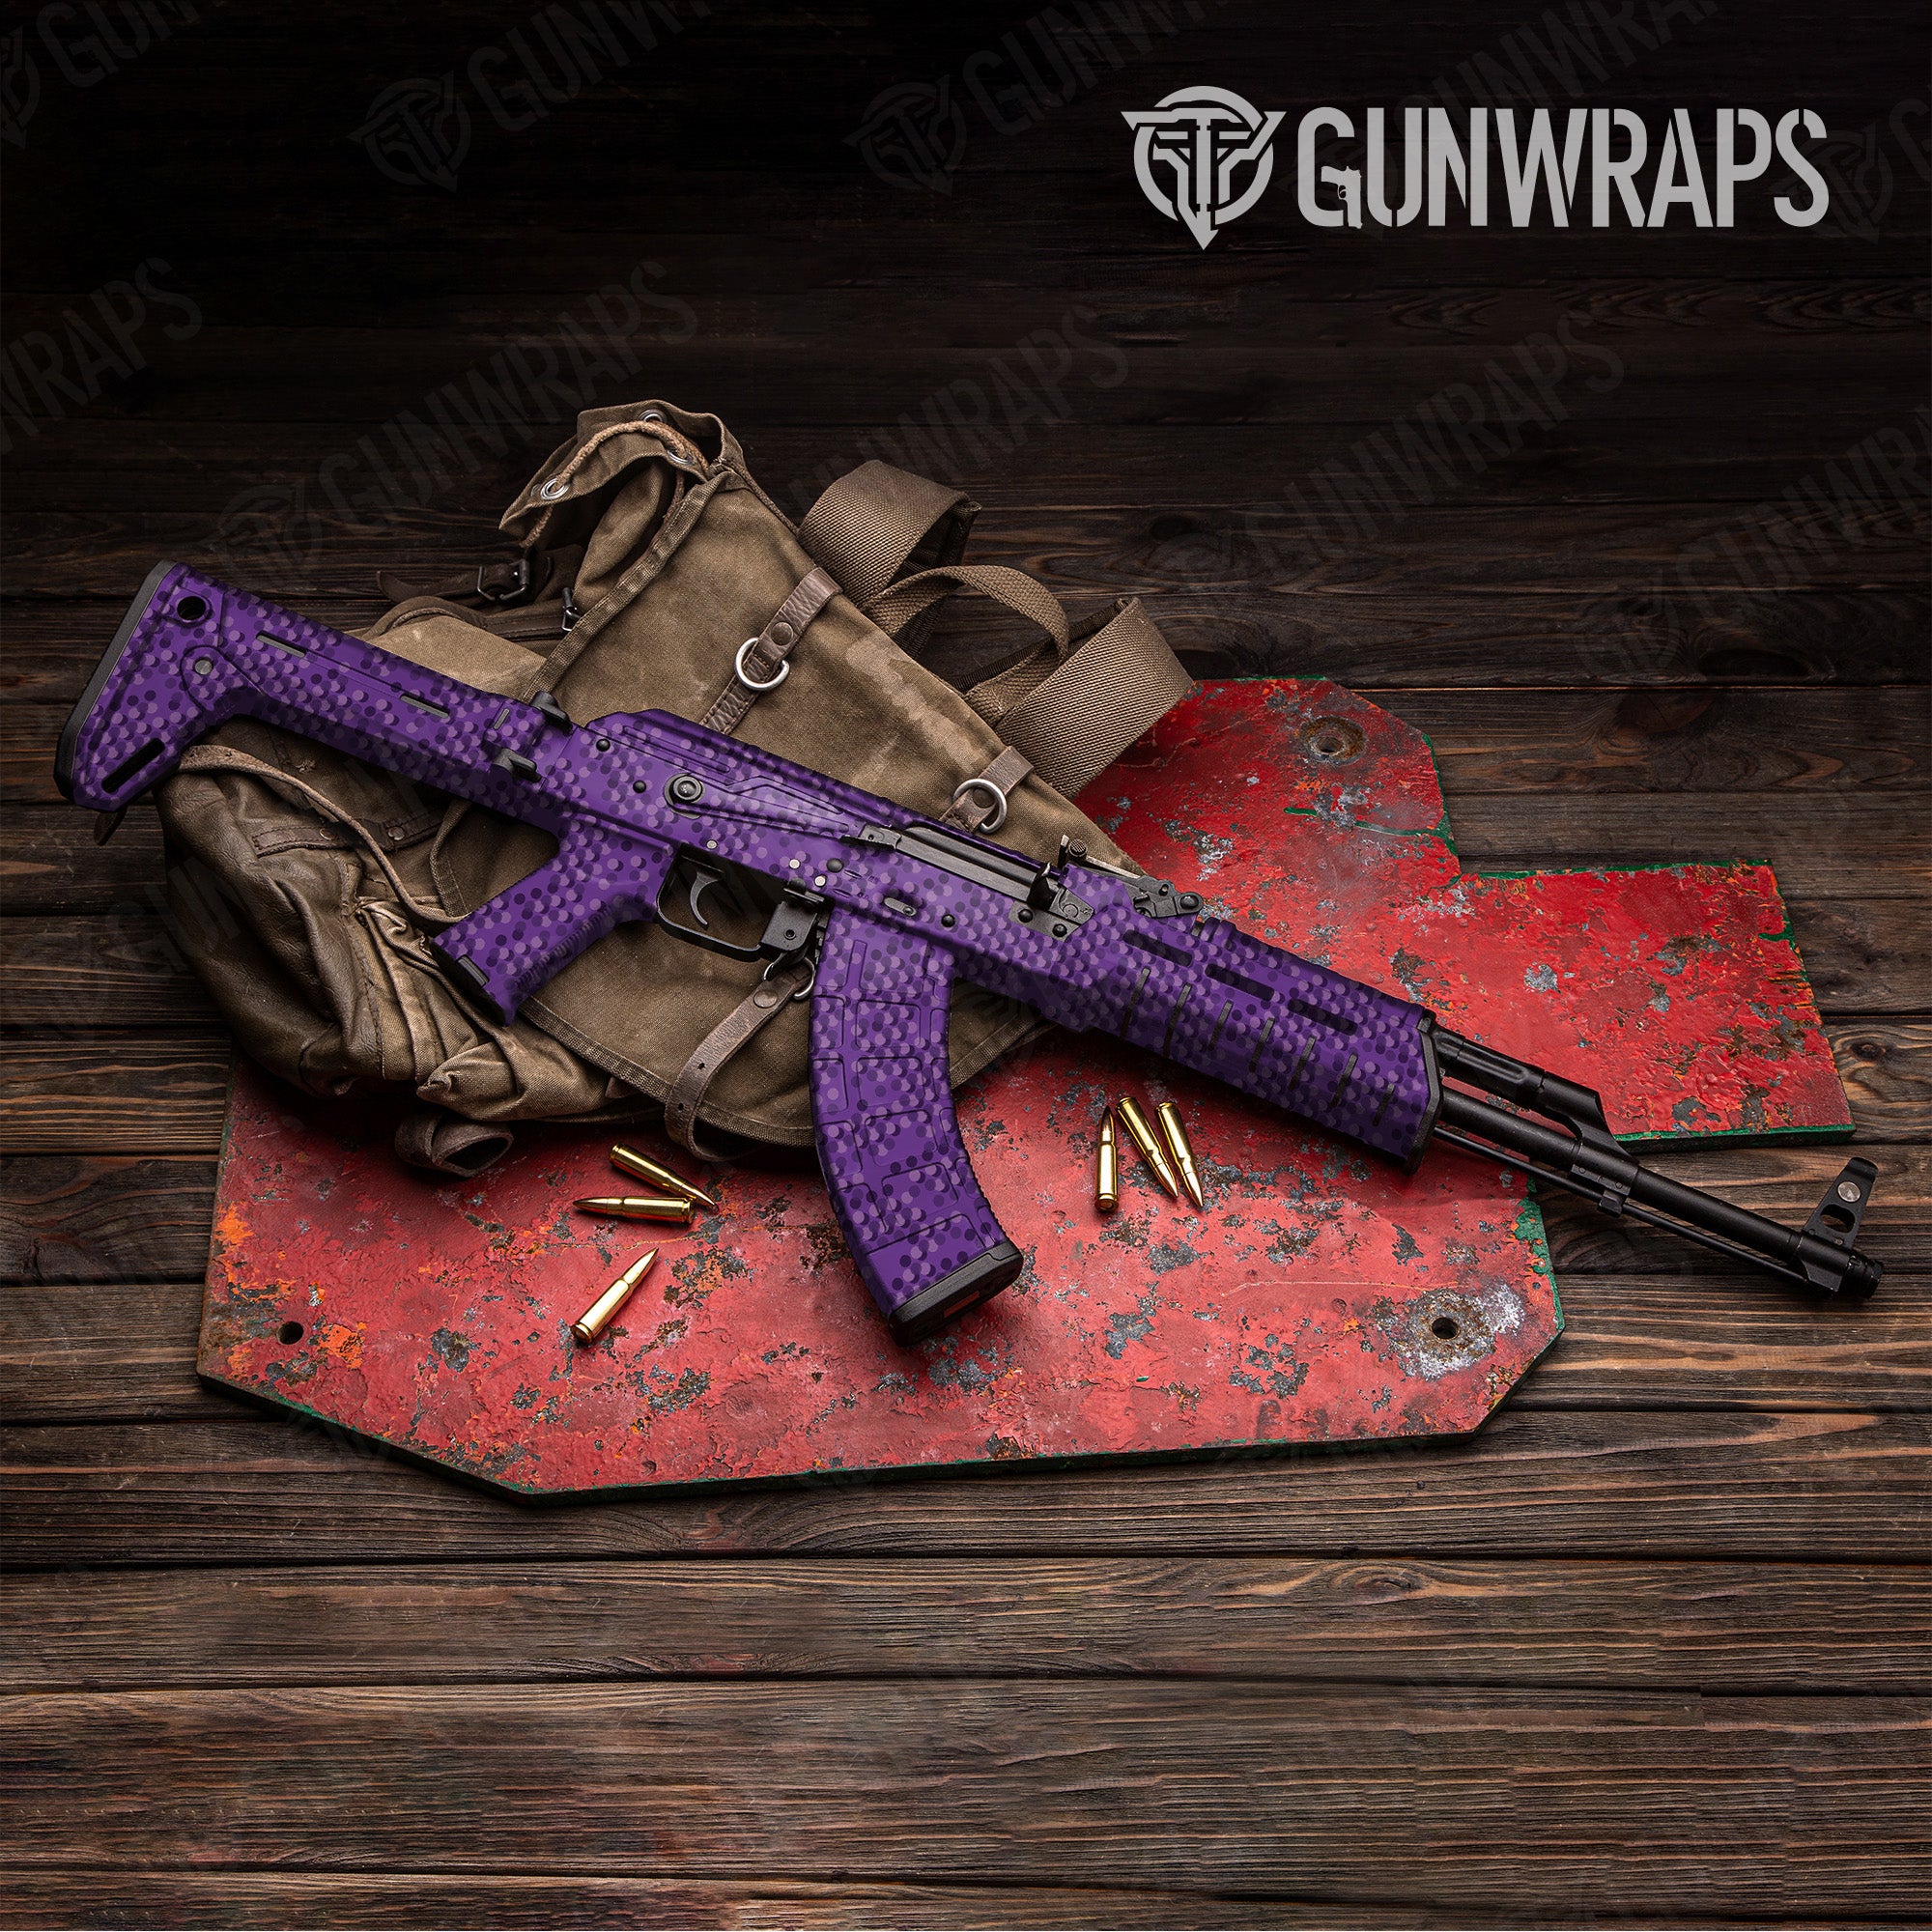 AK 47 Eclipse Camo Elite Purple Gun Skin Vinyl Wrap